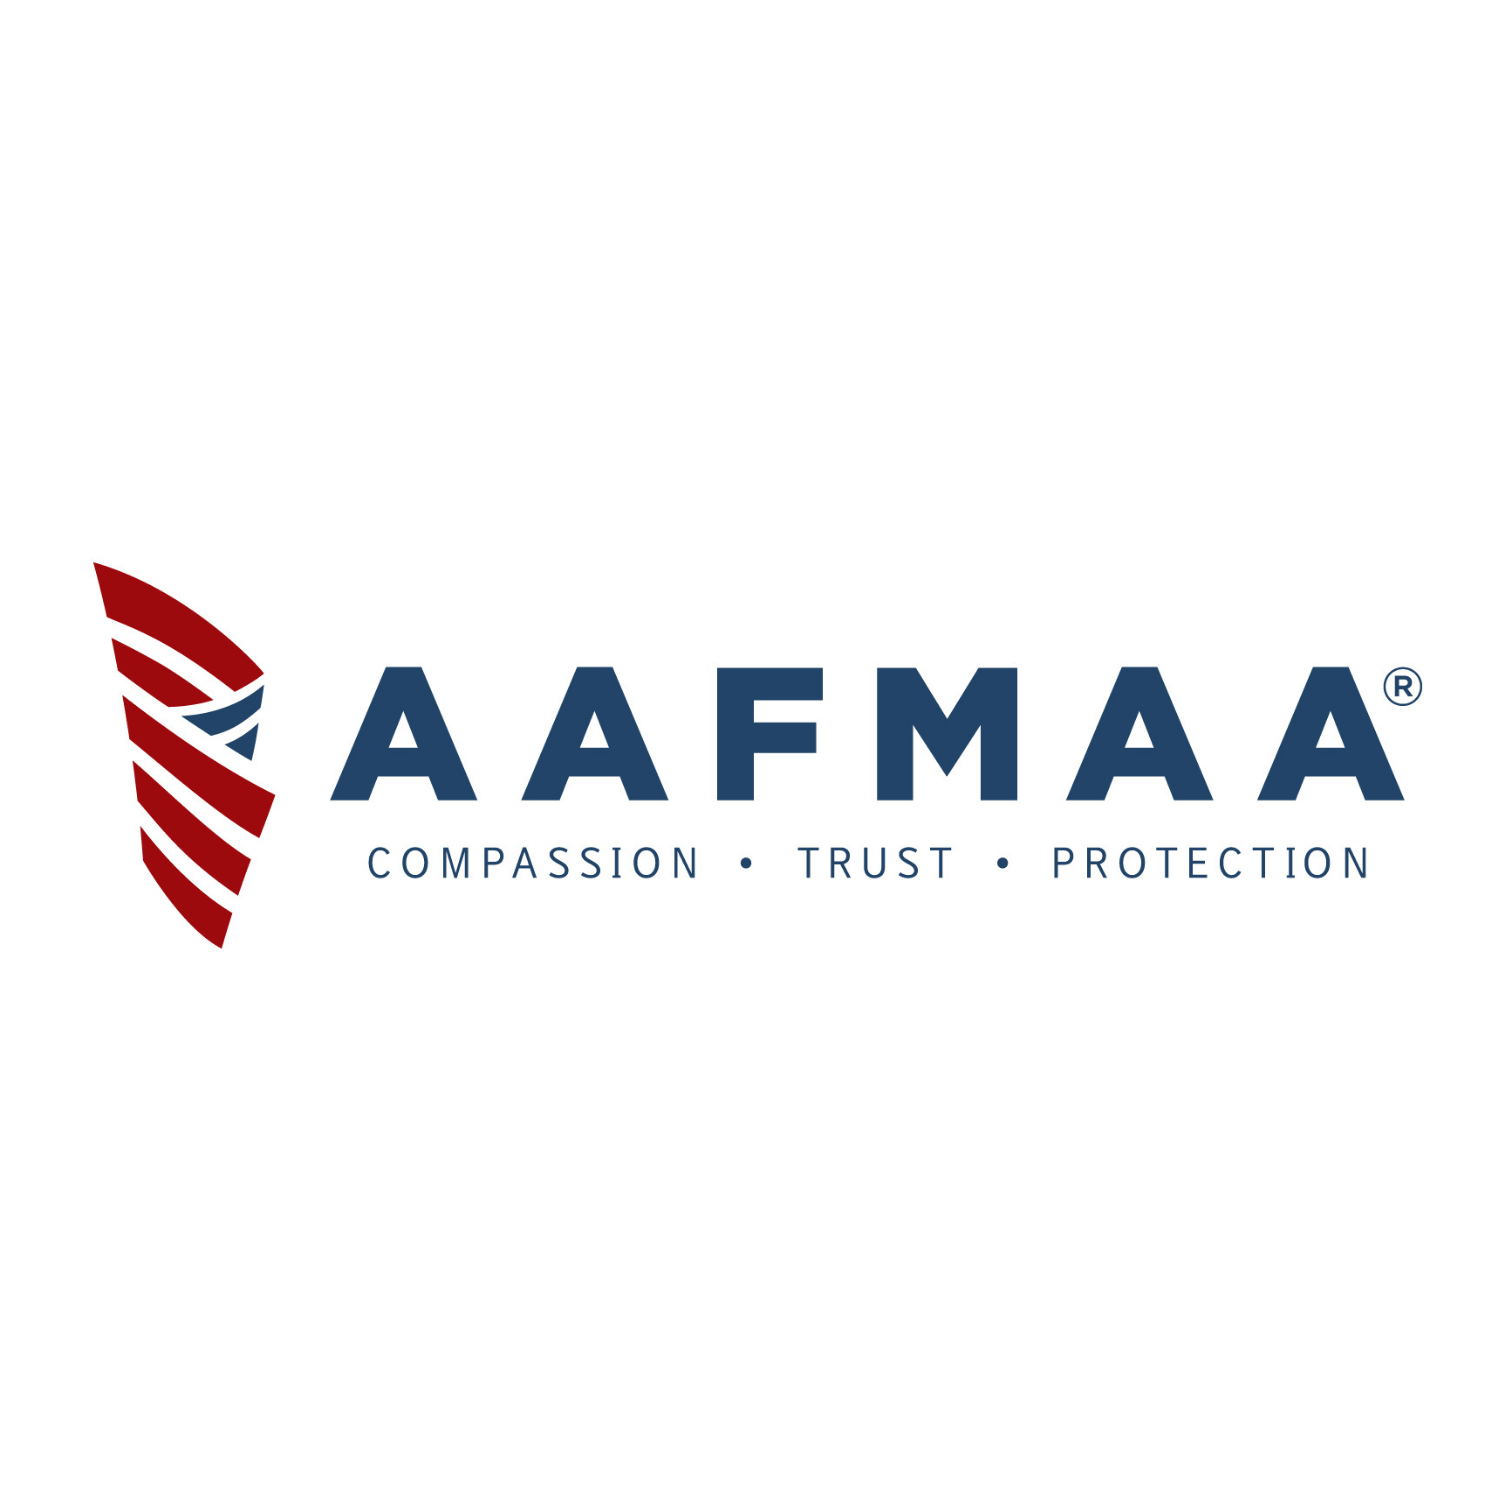 AAFMAA MSCC Resource